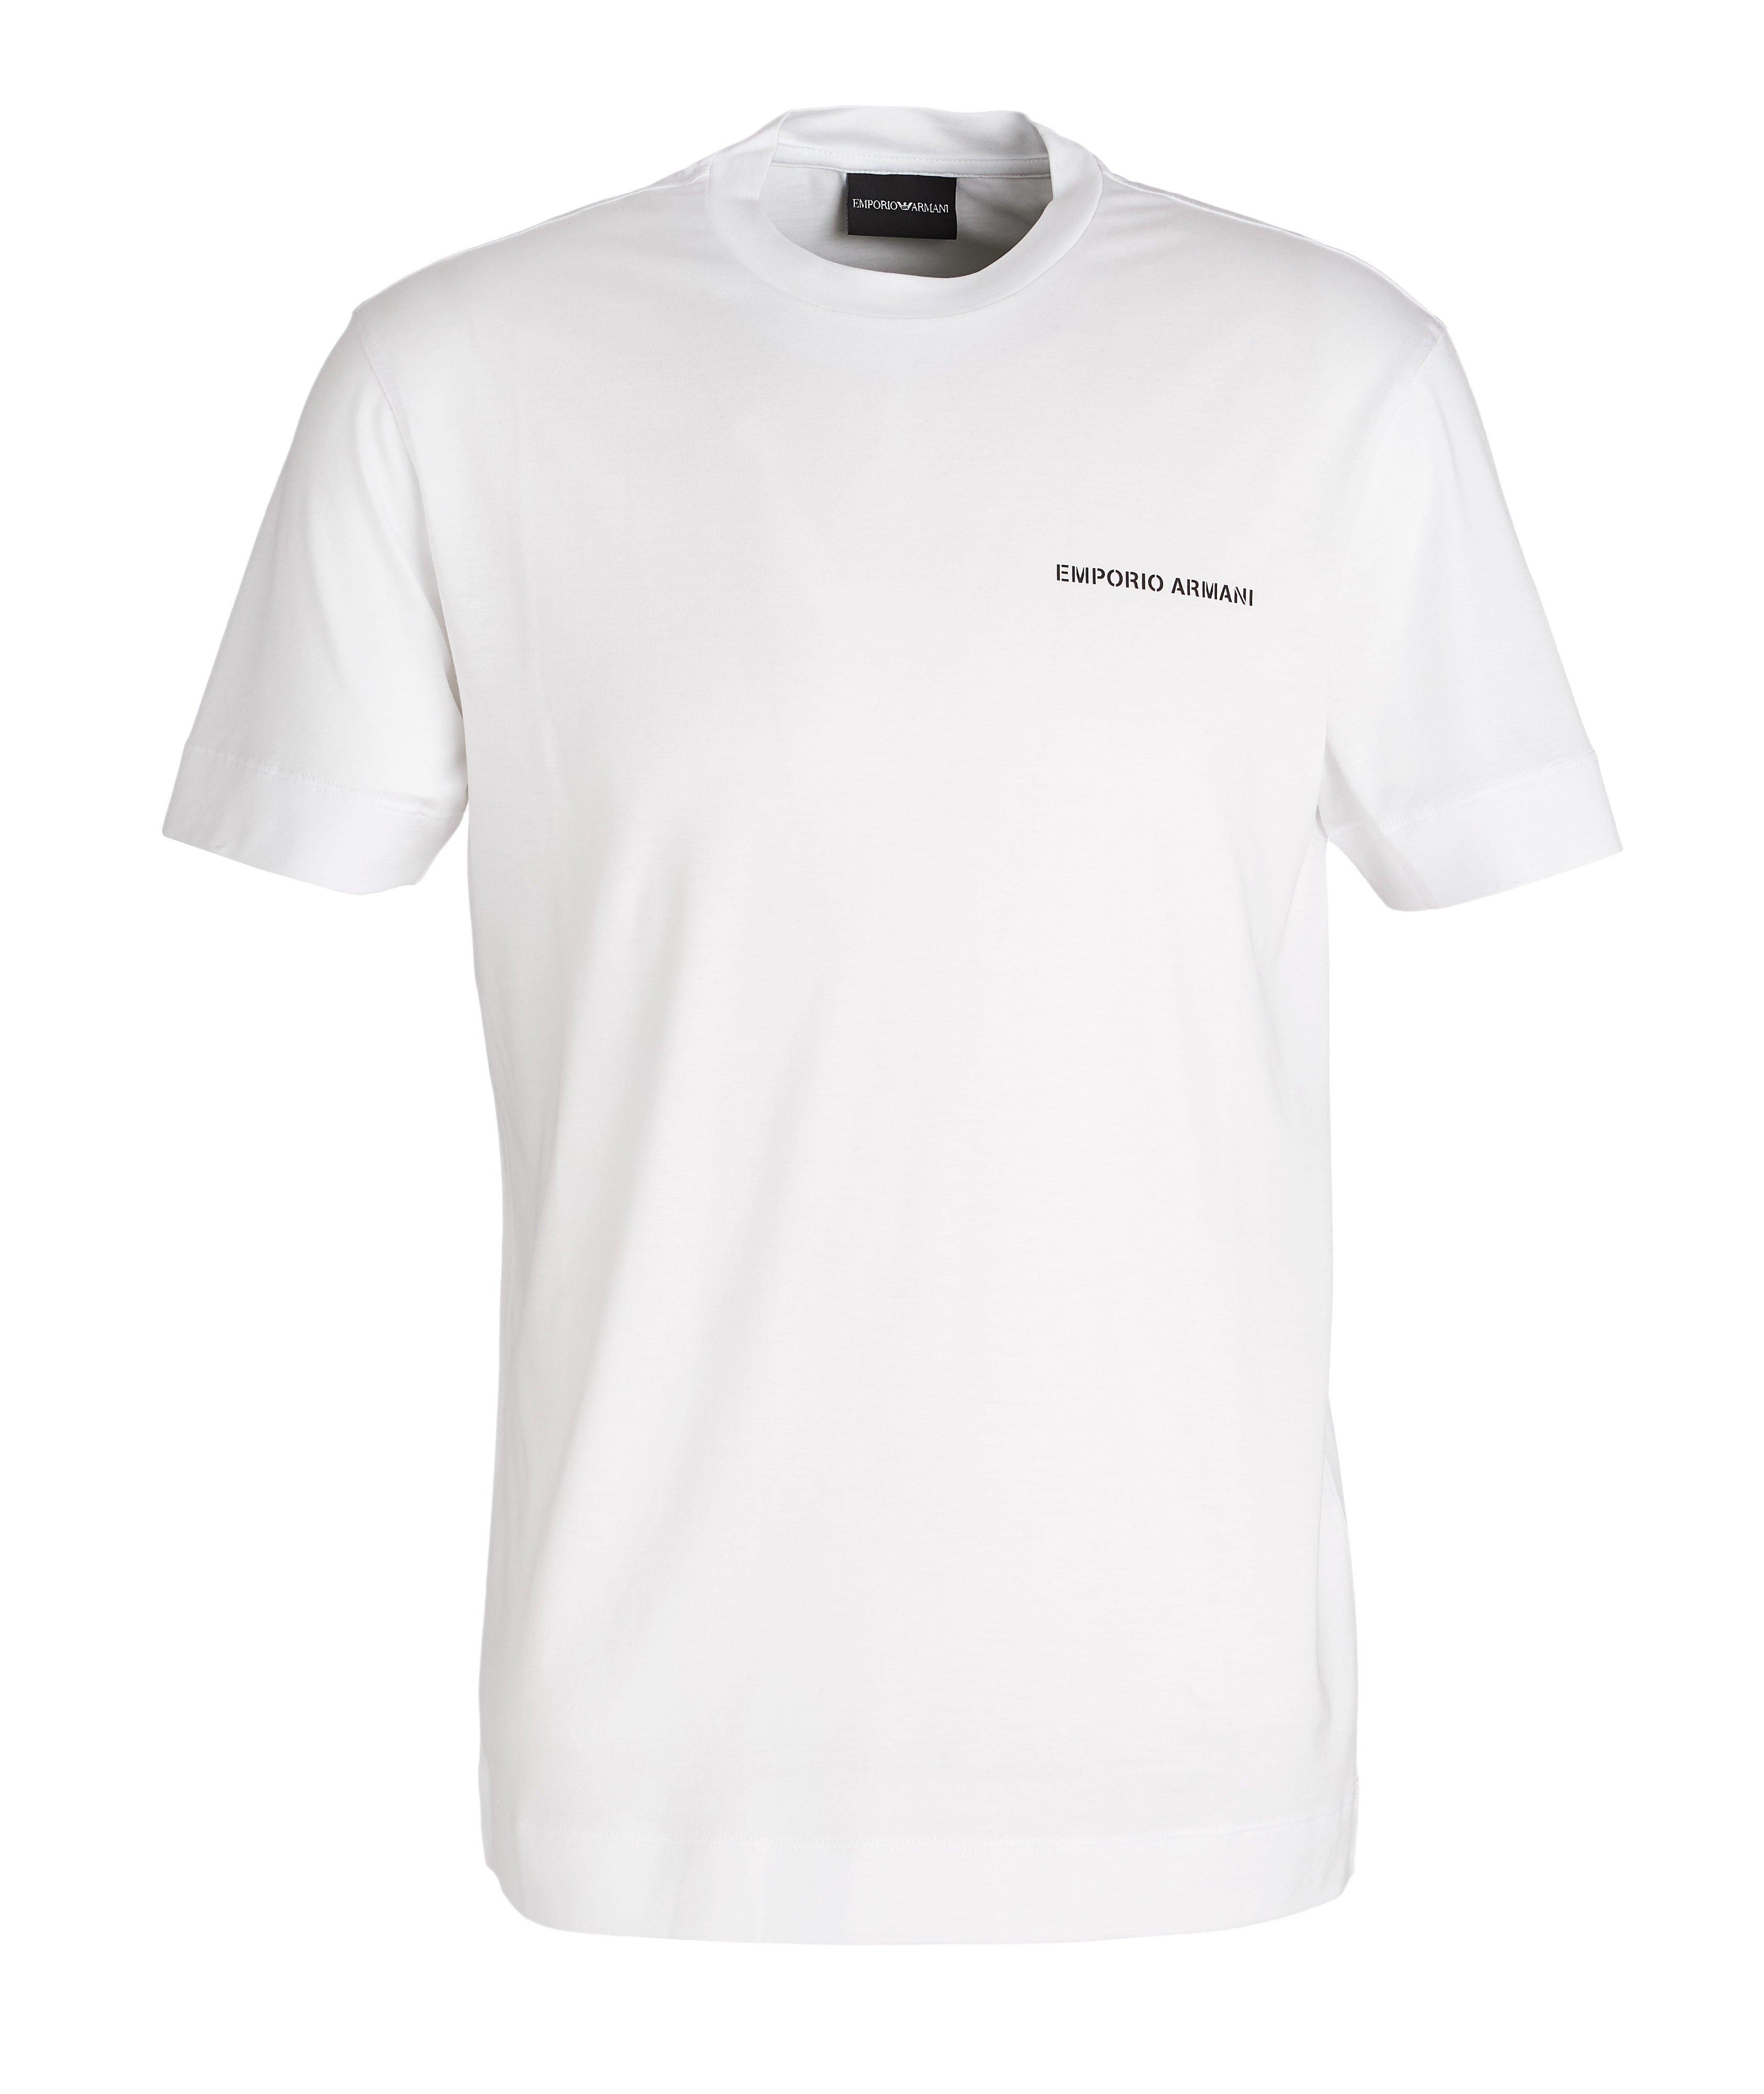 T-shirt en lyocell et coton avec logo image 0